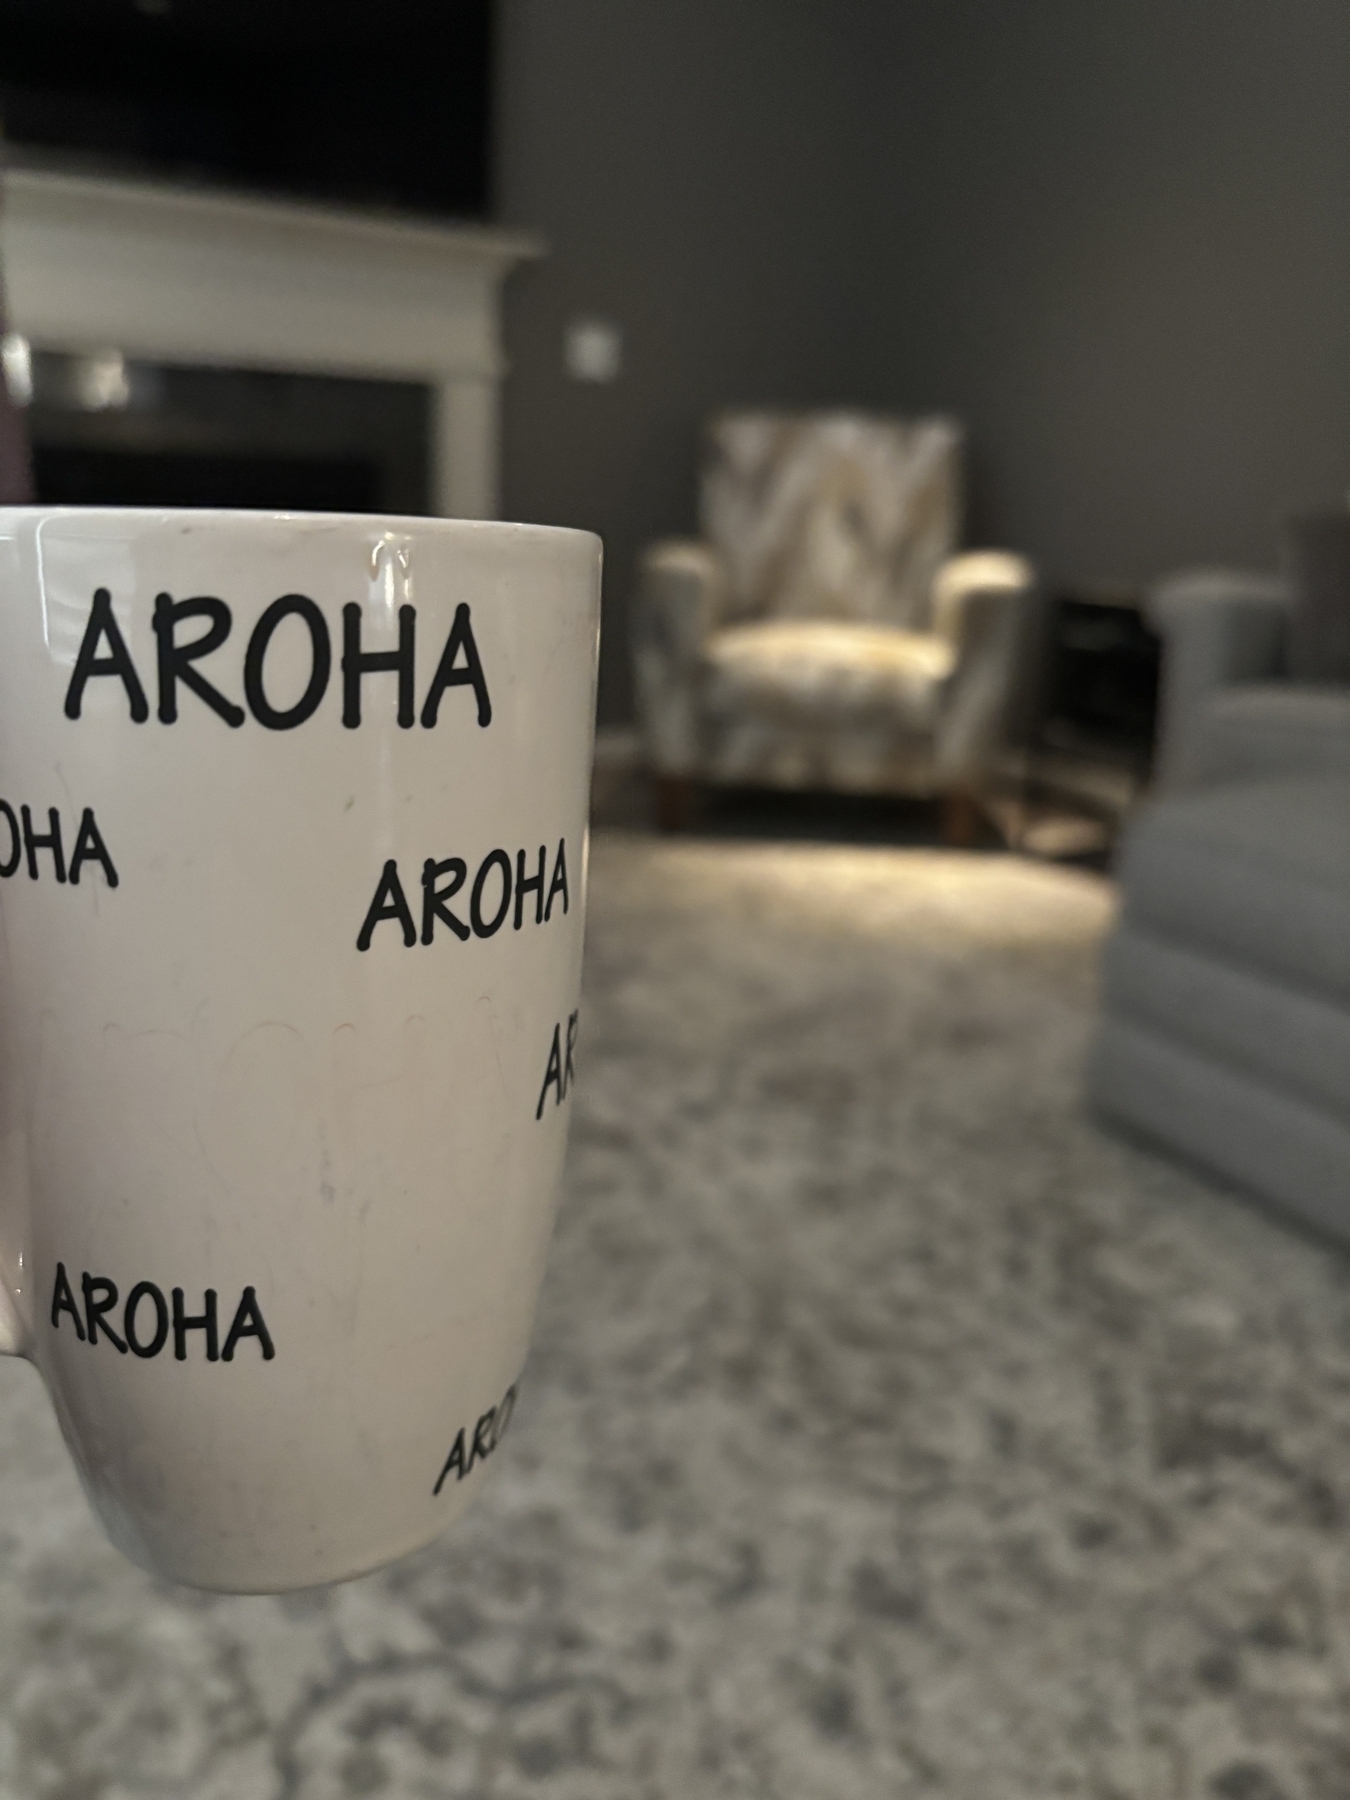 Aroha means love in Māori 